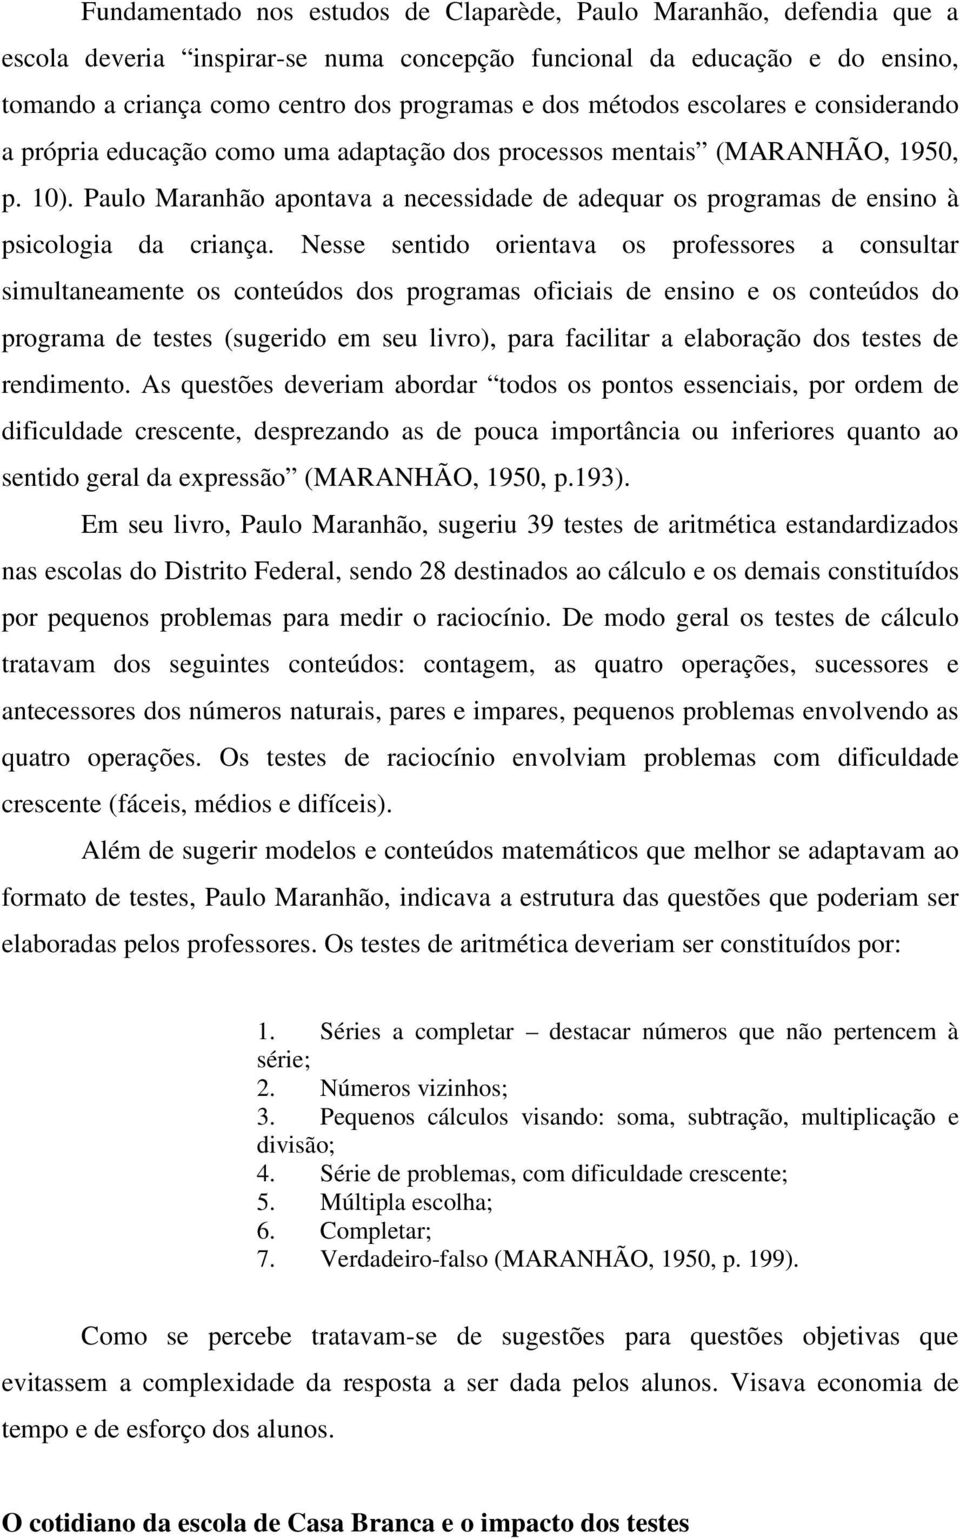 Paulo Maranhão apontava a necessidade de adequar os programas de ensino à psicologia da criança.